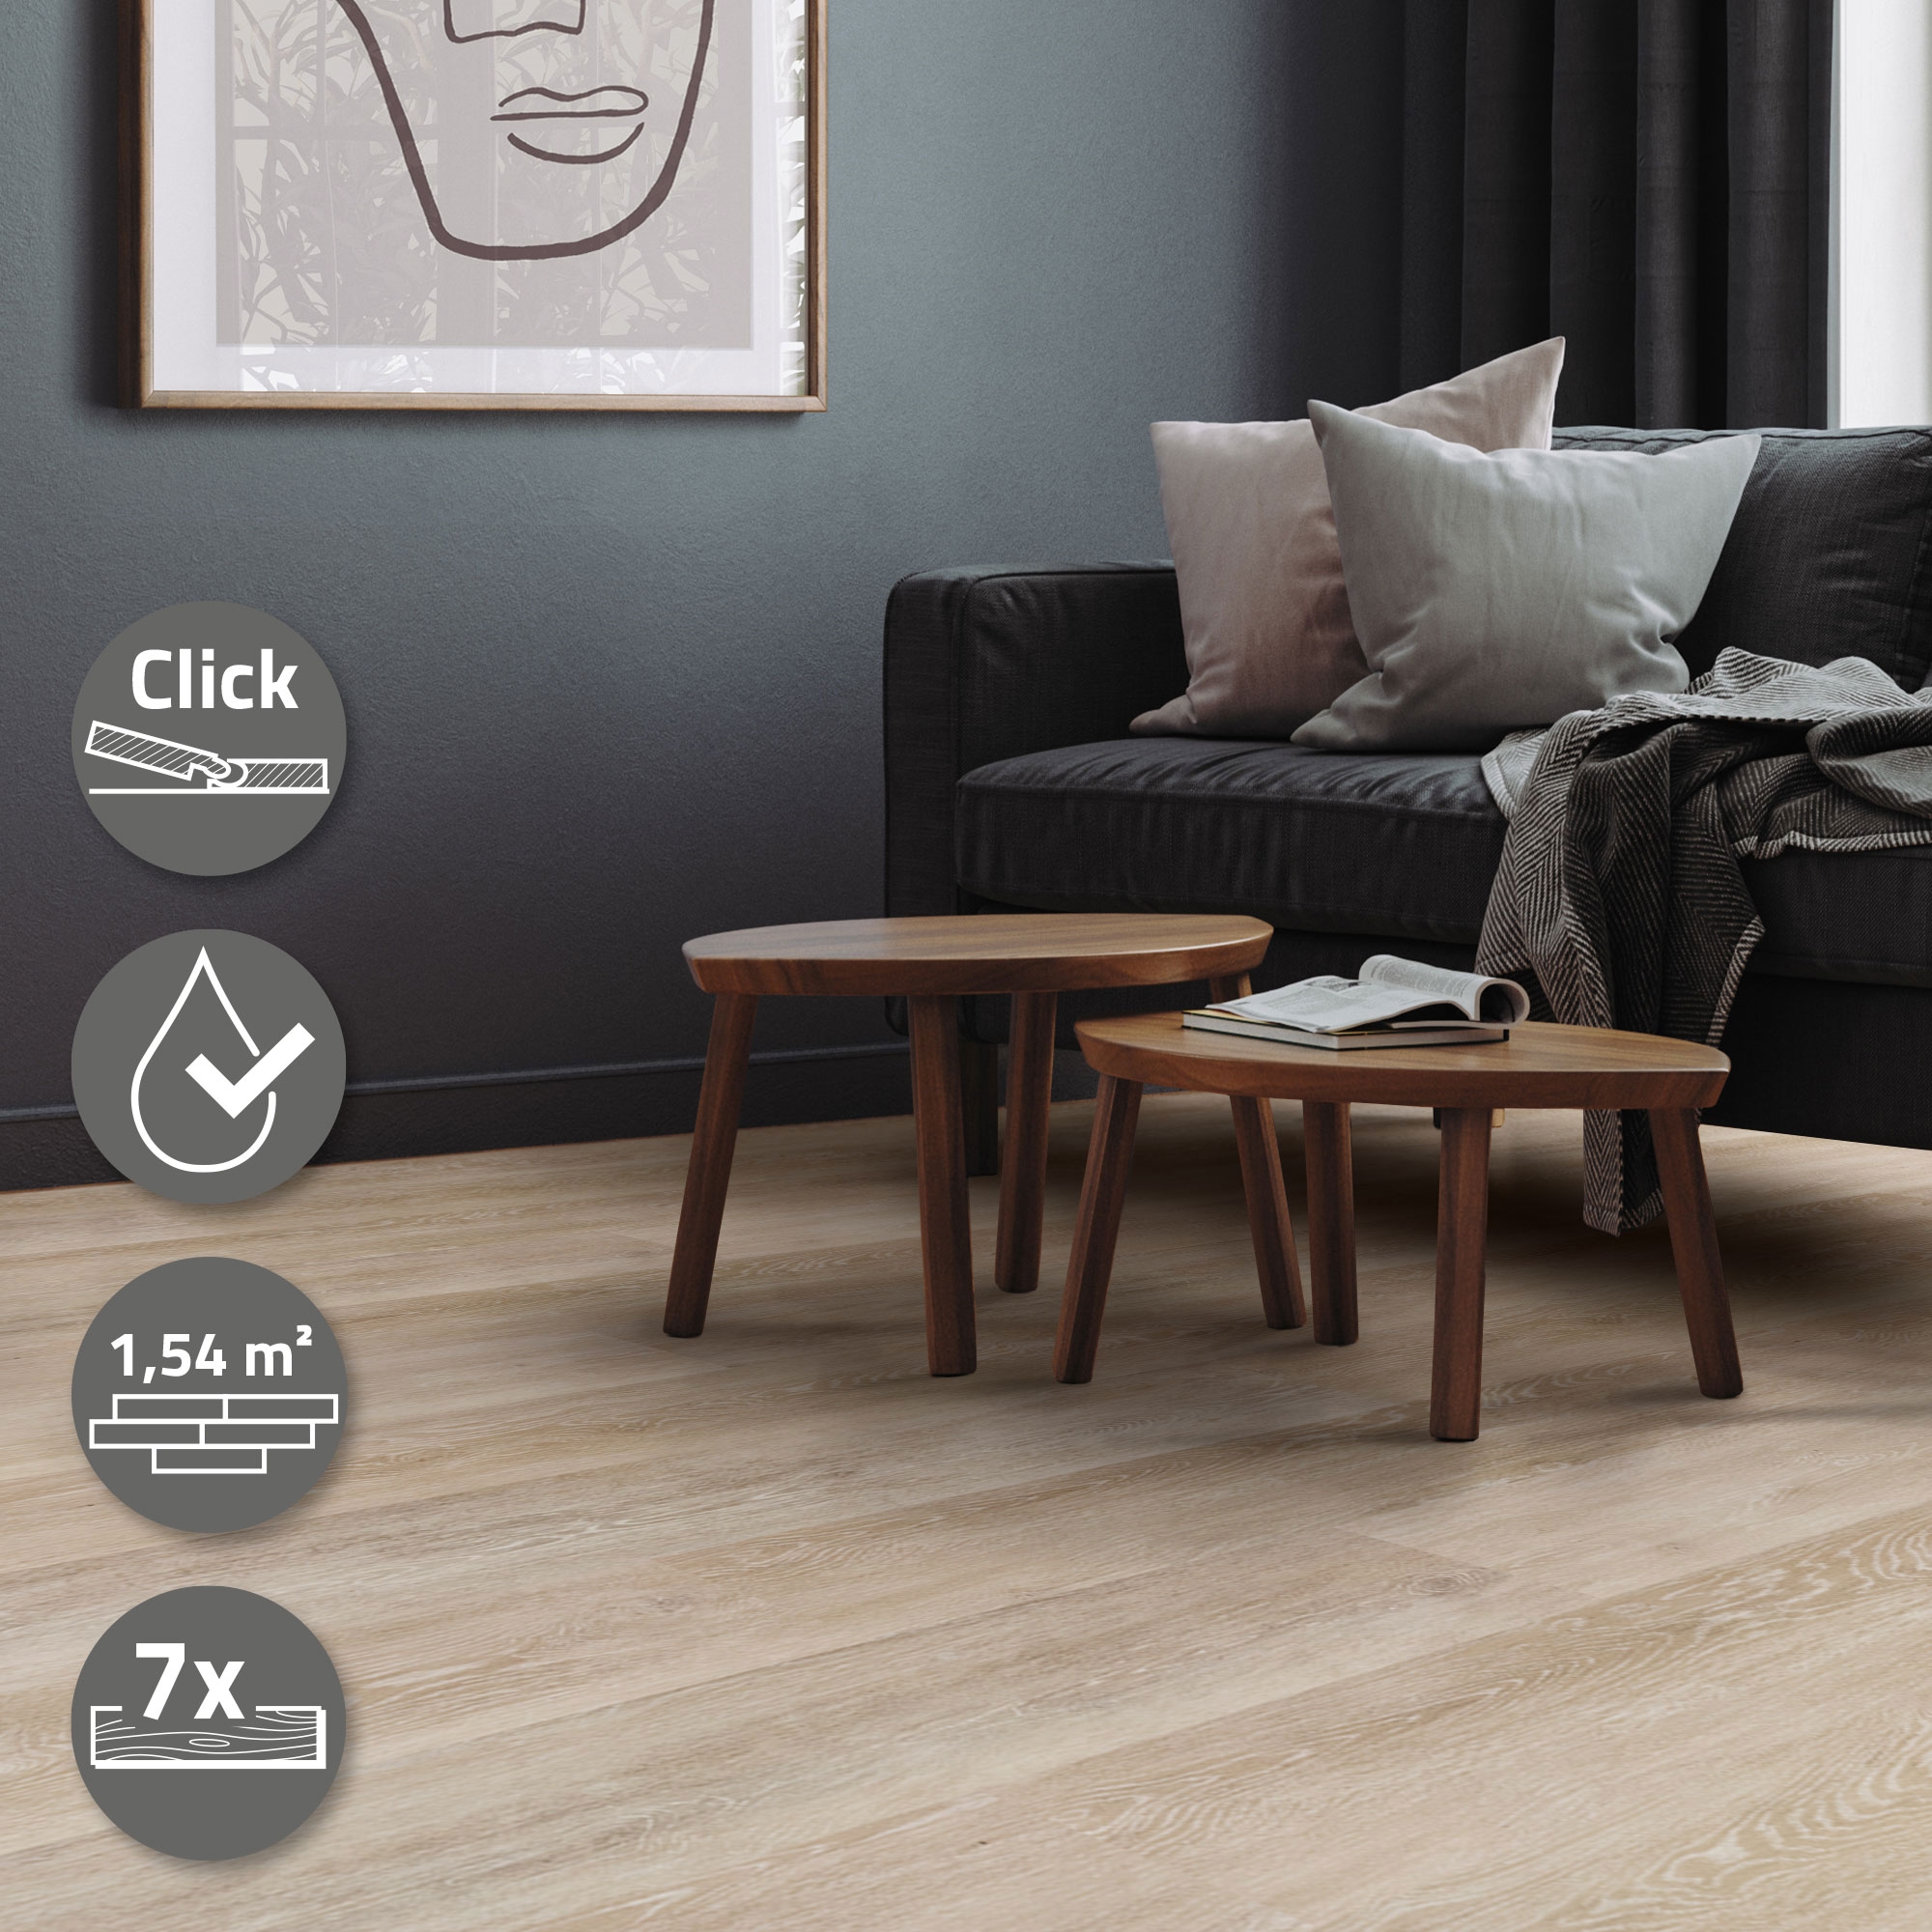 1,54-7,7 m² Click Vinylboden 4,2mm Nutzschicht Wasserfest Bodenbelag Laminat PVC